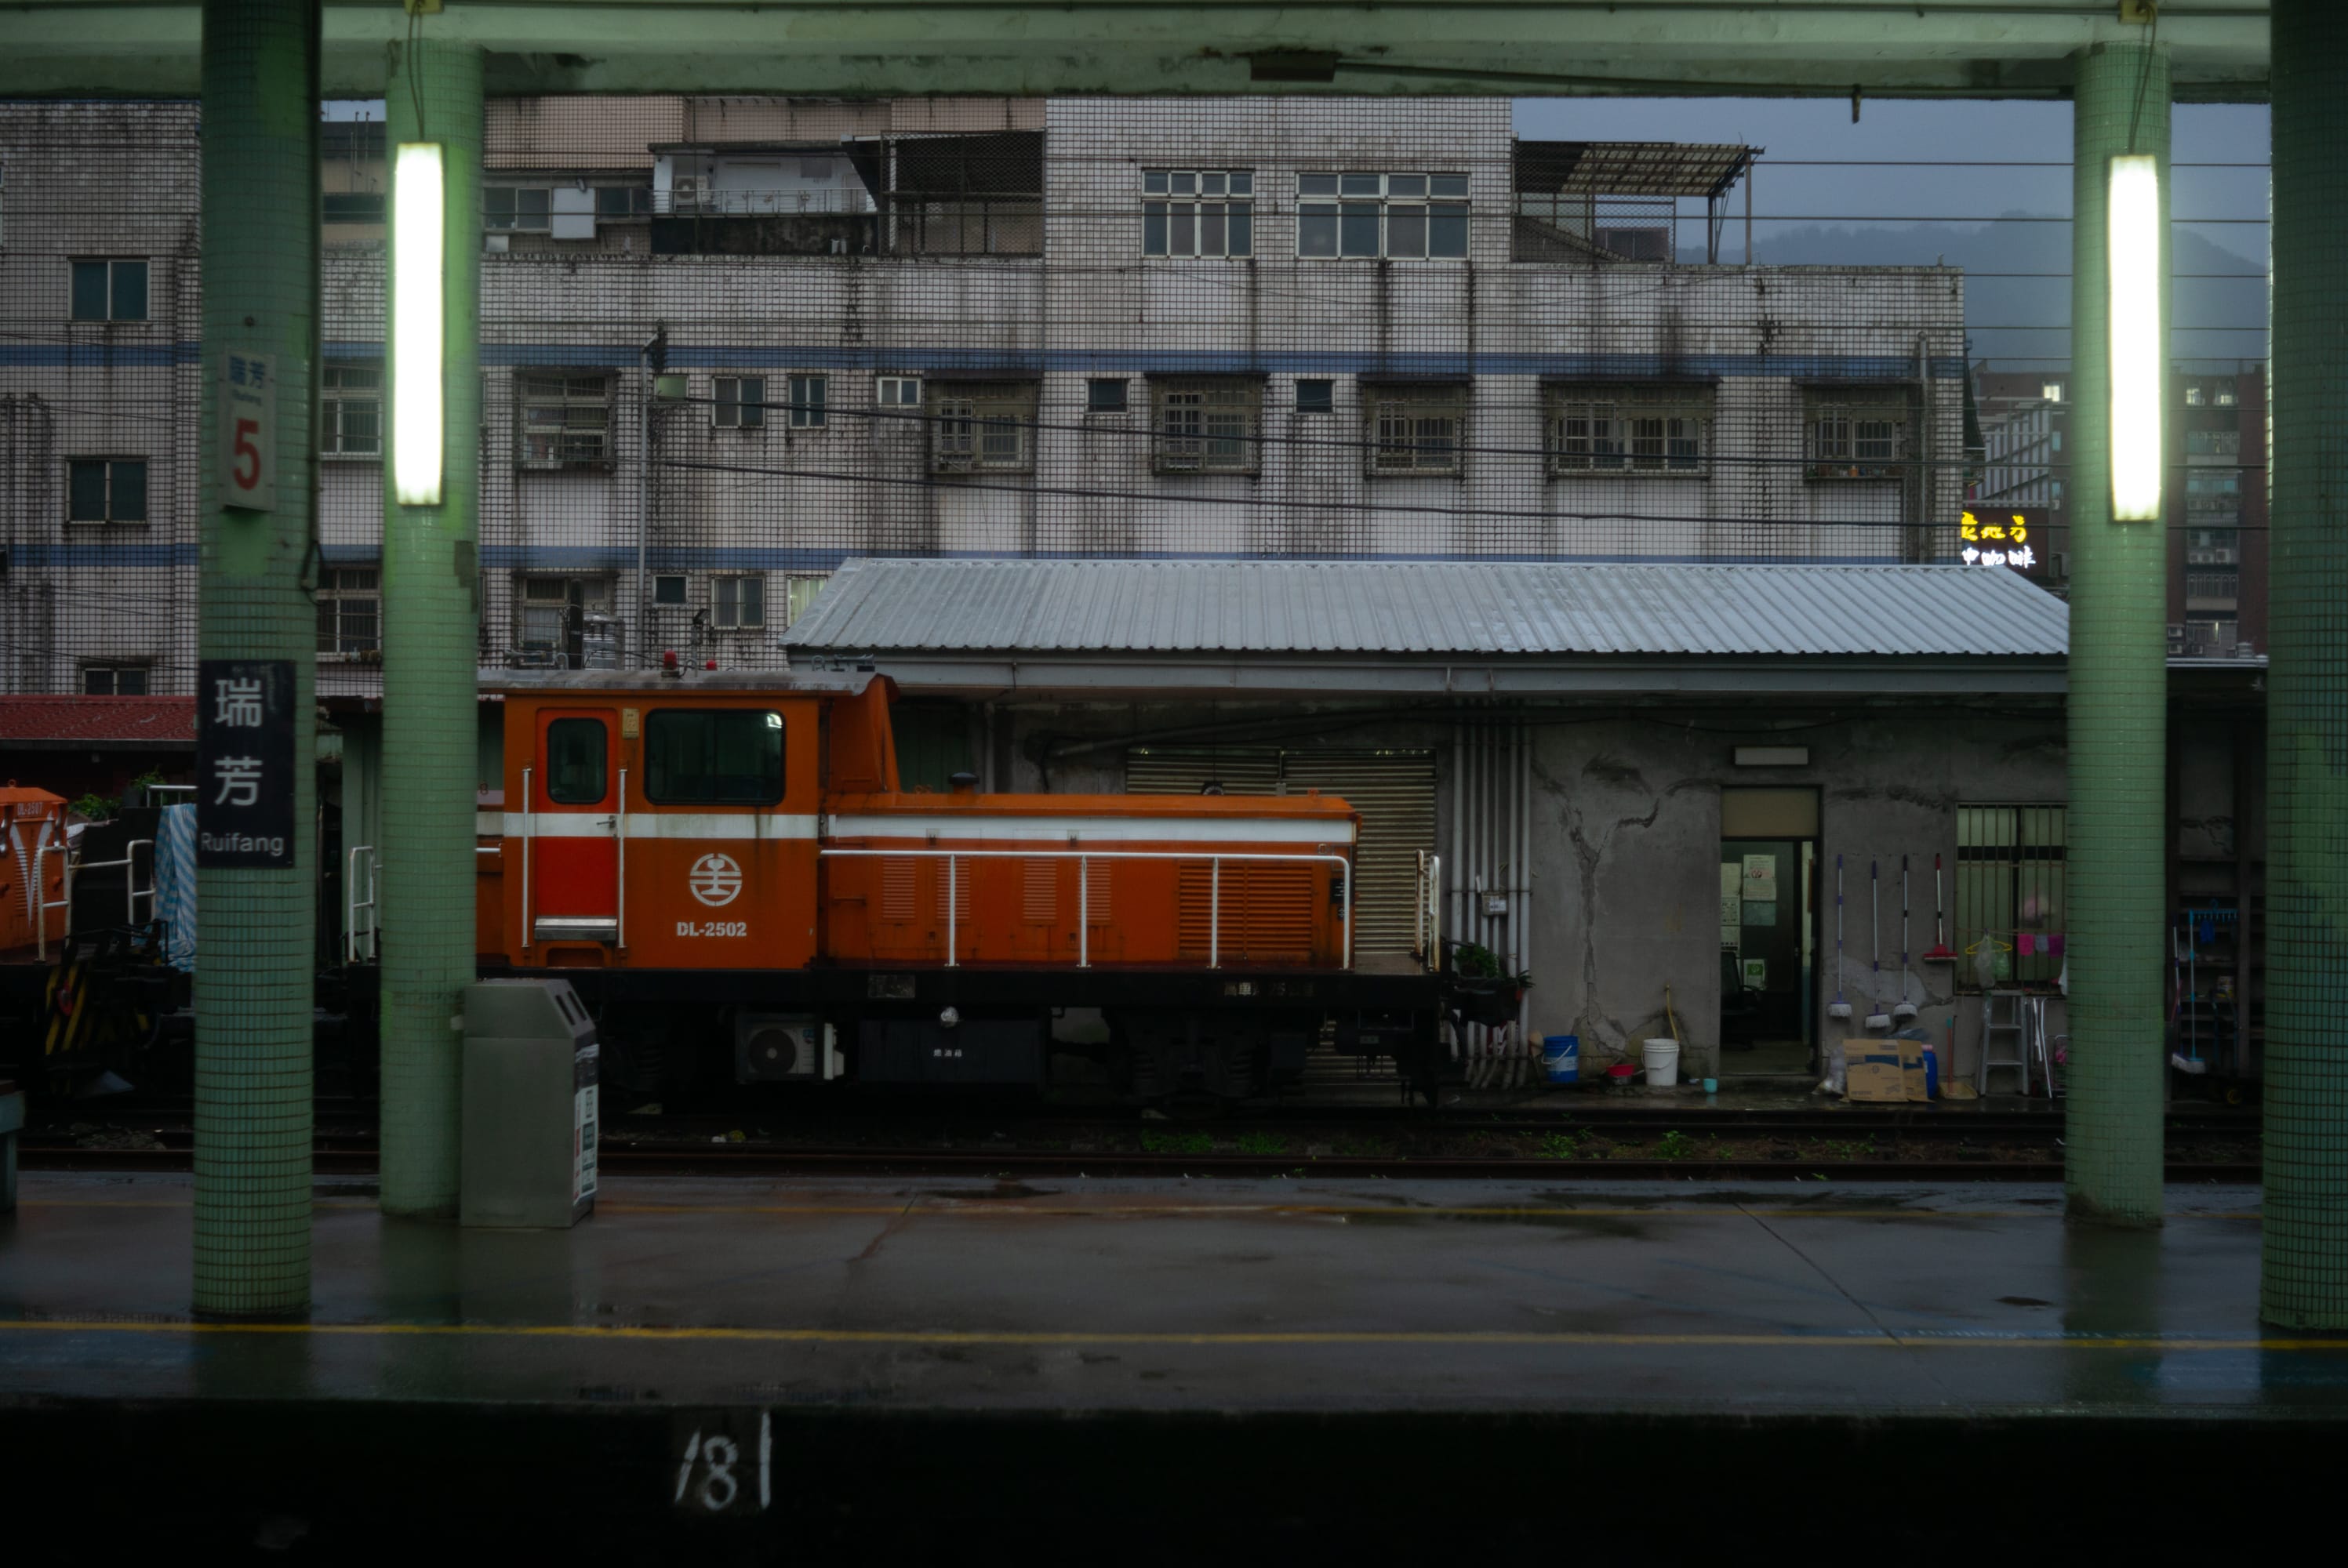 2023.12 - Ruifang Station, New Taipei City, Taiwan